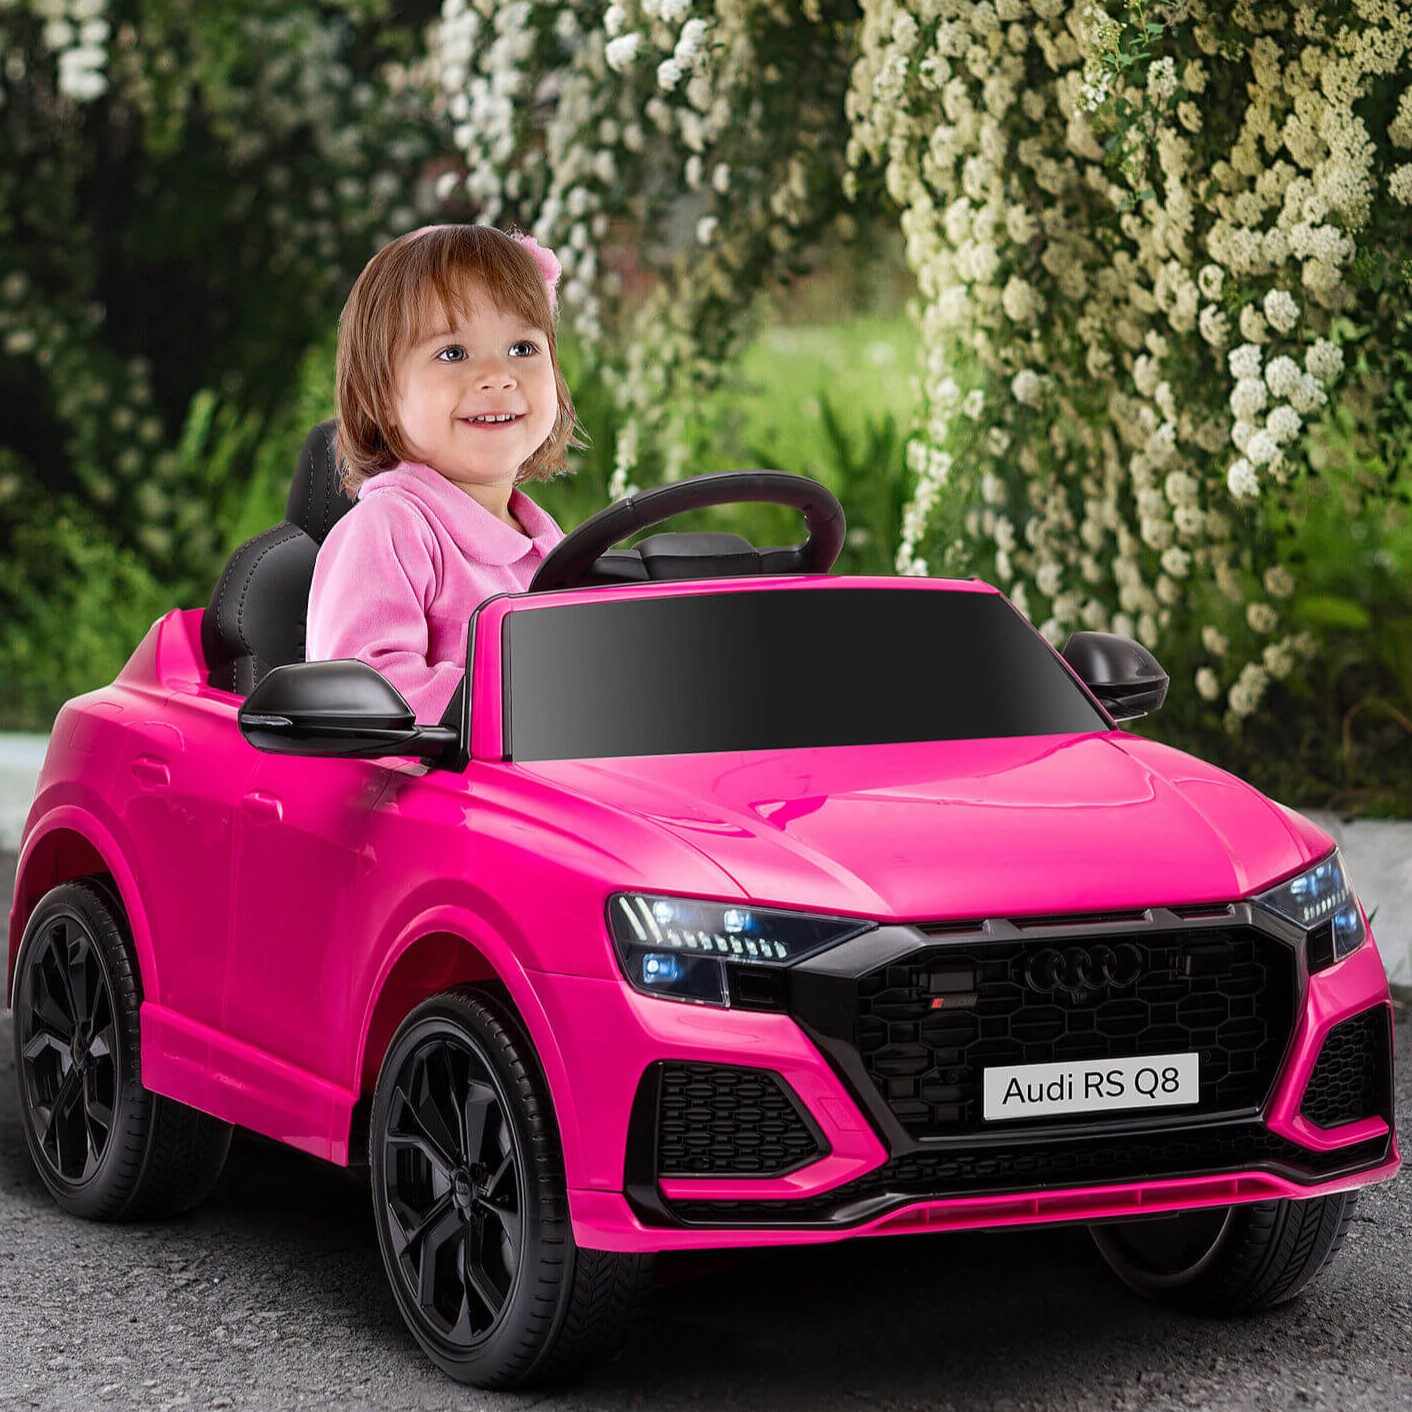 Masinuta electrica pentru copii Audi RSQ8, Manini, roti EVA, scaun piele ecologica, 2 motoare 35 W, Roz